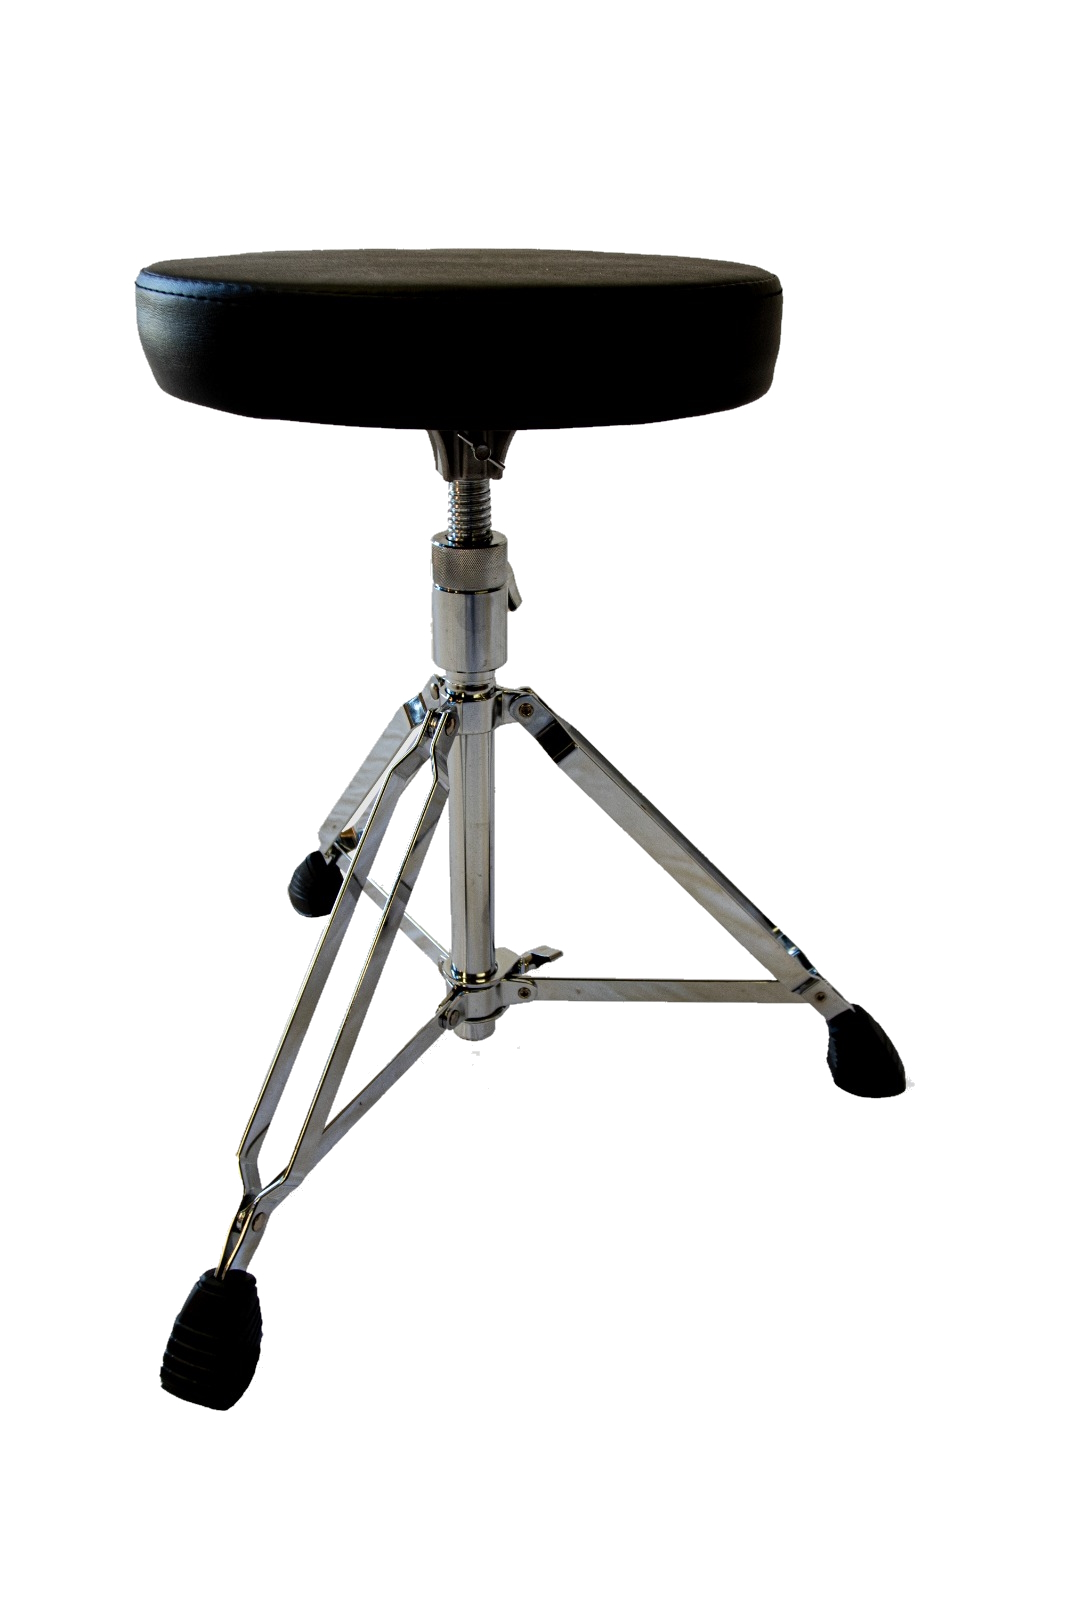 Стулья и коврики для барабанщиков Zowag NTR925Z Drum Throne 925Z Entry Level Series обеденные стулья 4 шт белье обложка